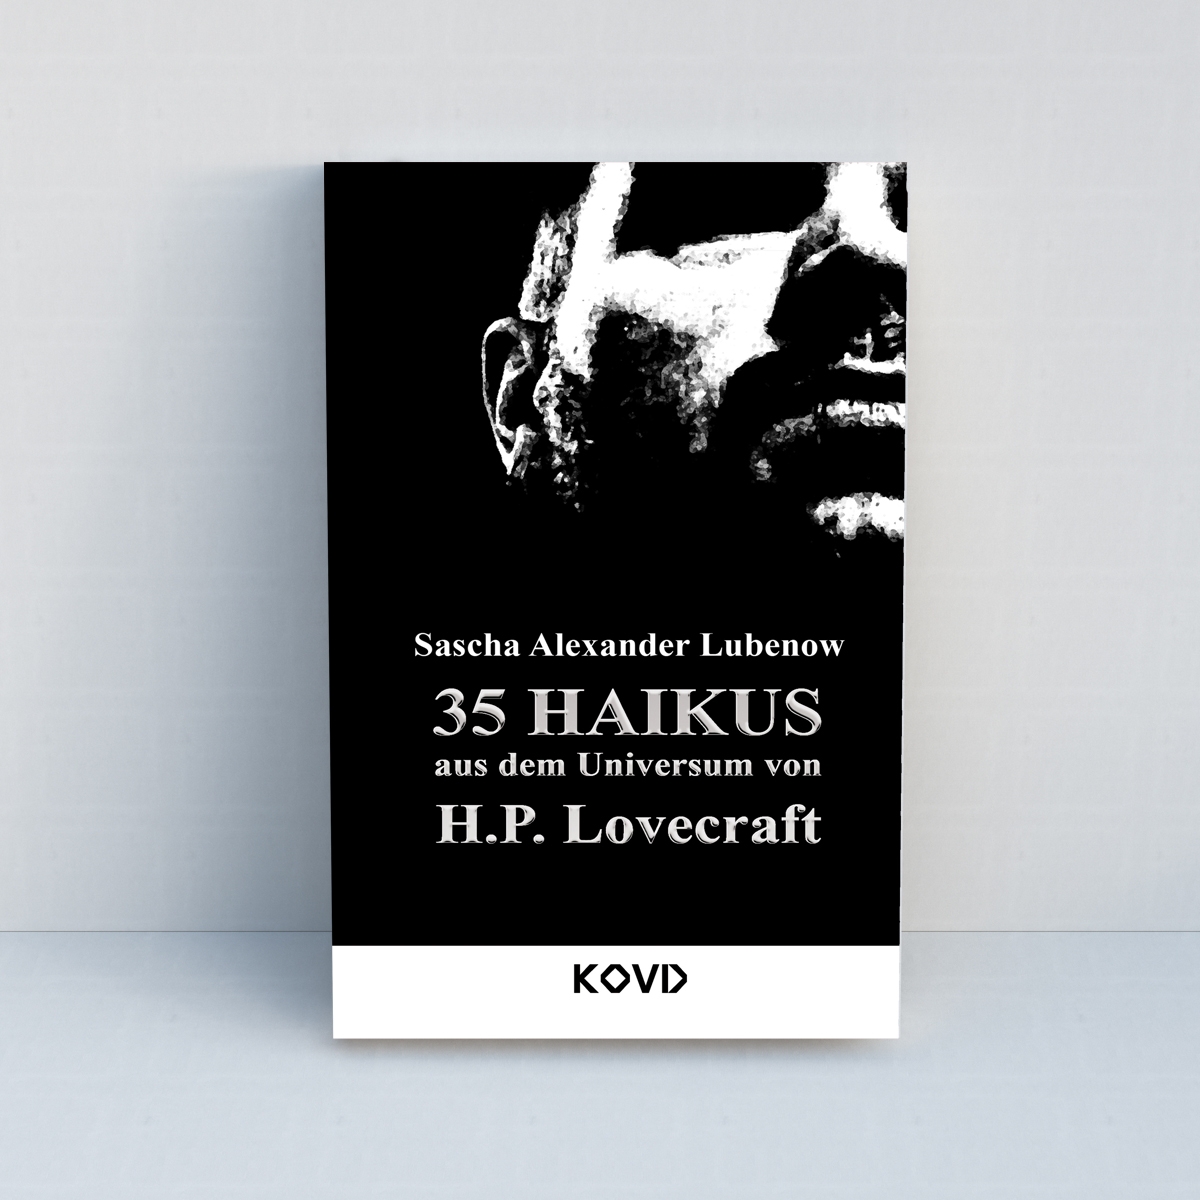 35 Haikus aus dem Universum von H.P. Lovecraft von Sascha Alexander Lubenow - Standard Edition